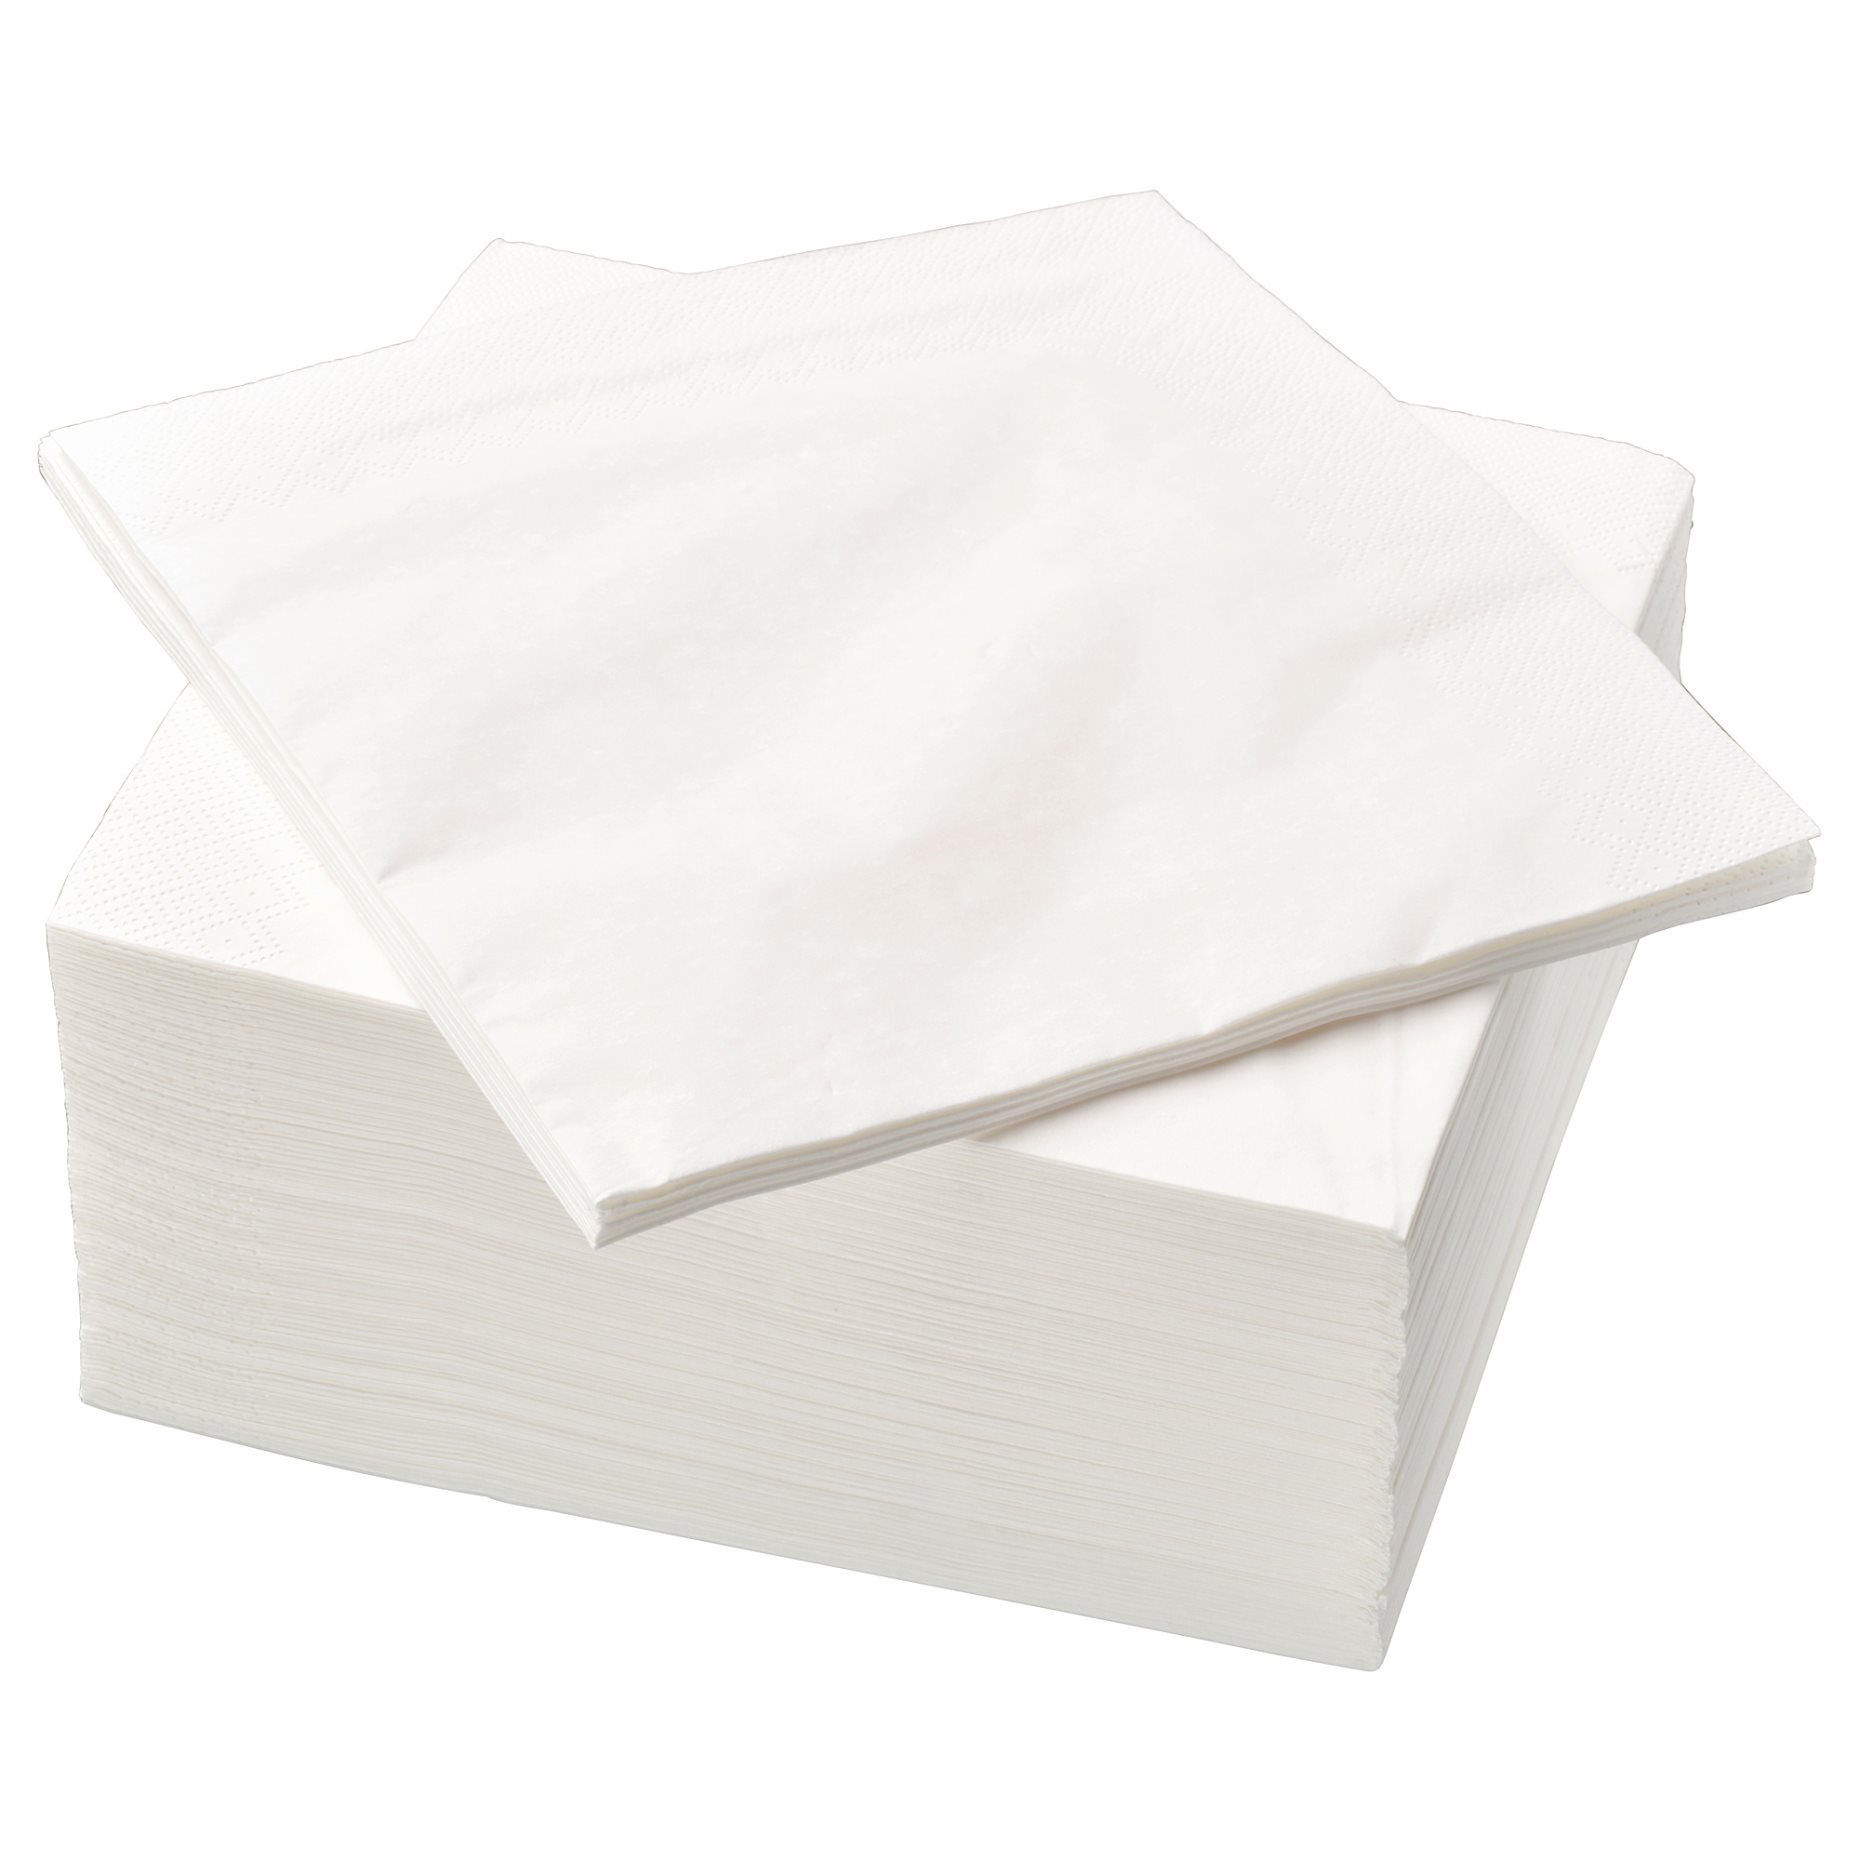 FANTASTISK, paper napkin, 100 pack, 760gr., 500.357.52